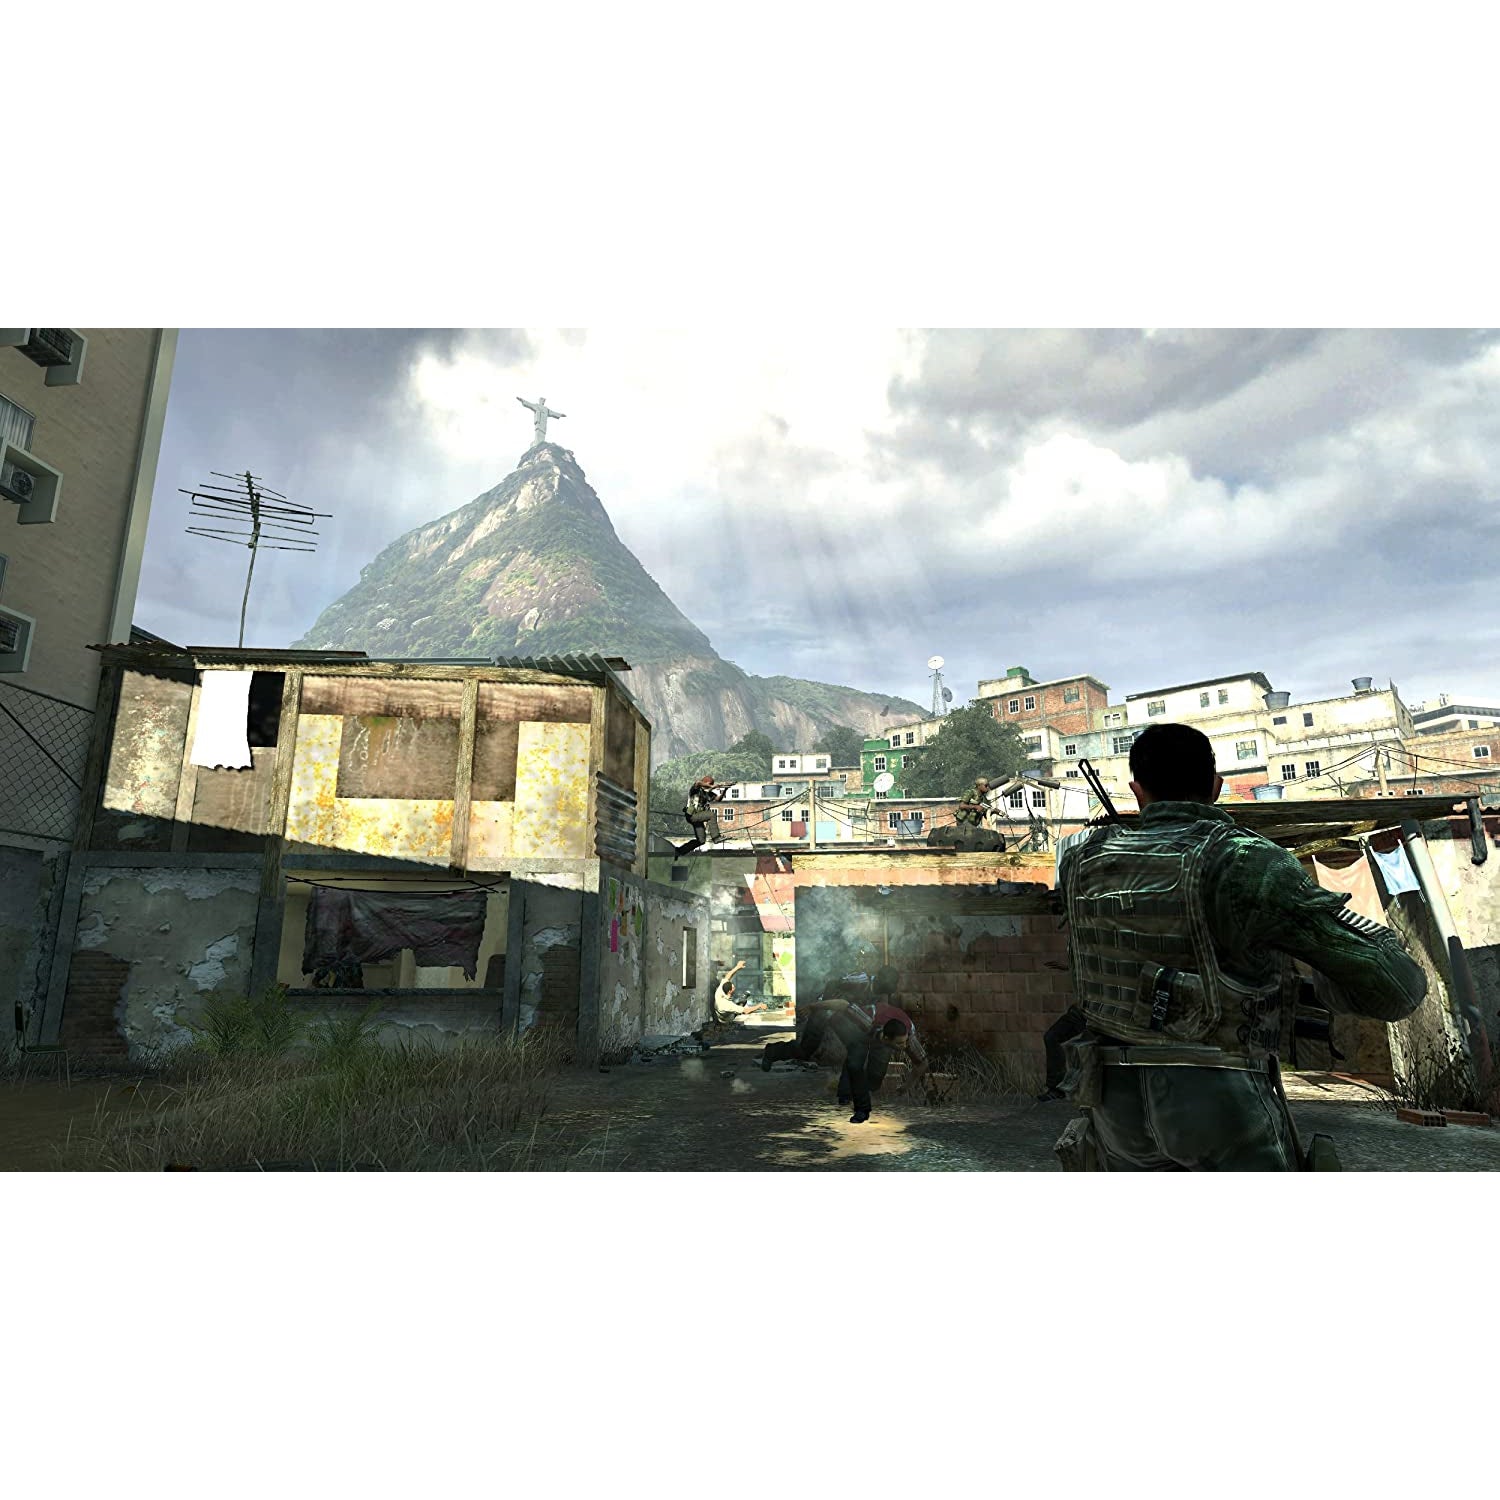 Call of Duty: Modern Warfare 2 (PS3)